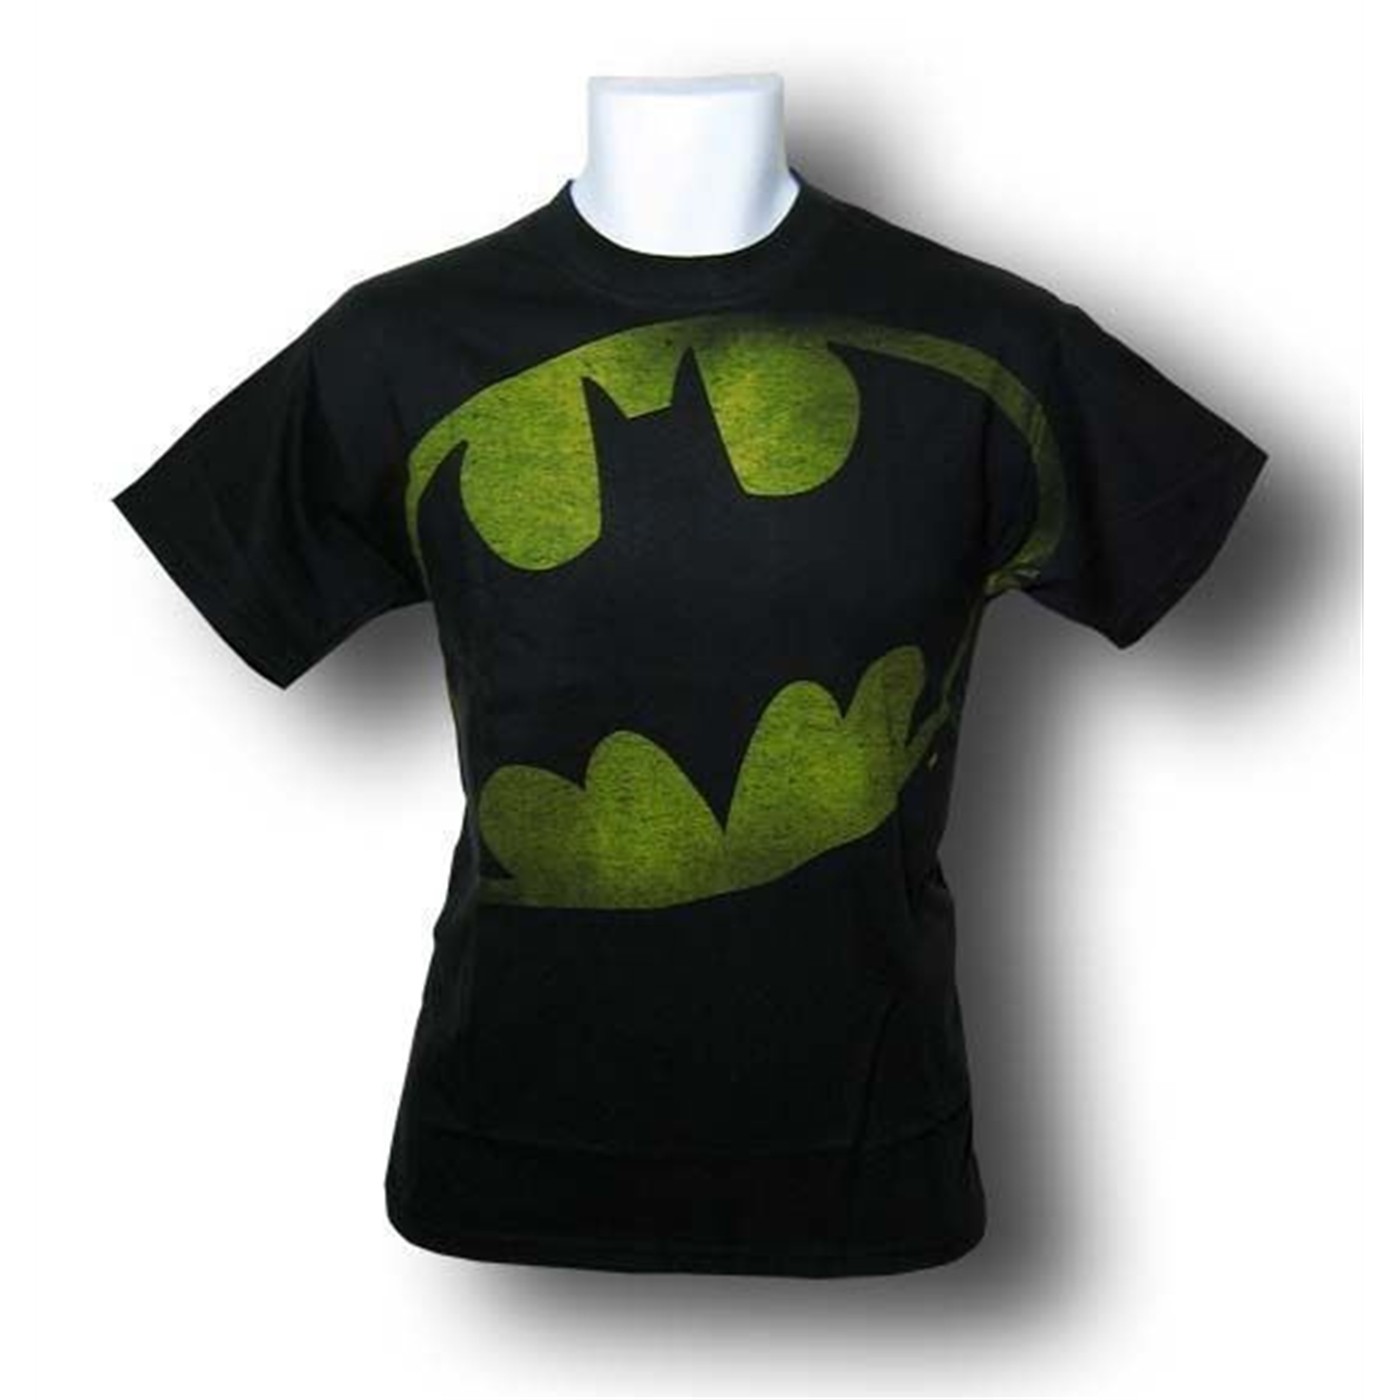 Batman Black Big Distressed Symbol T-Shirt